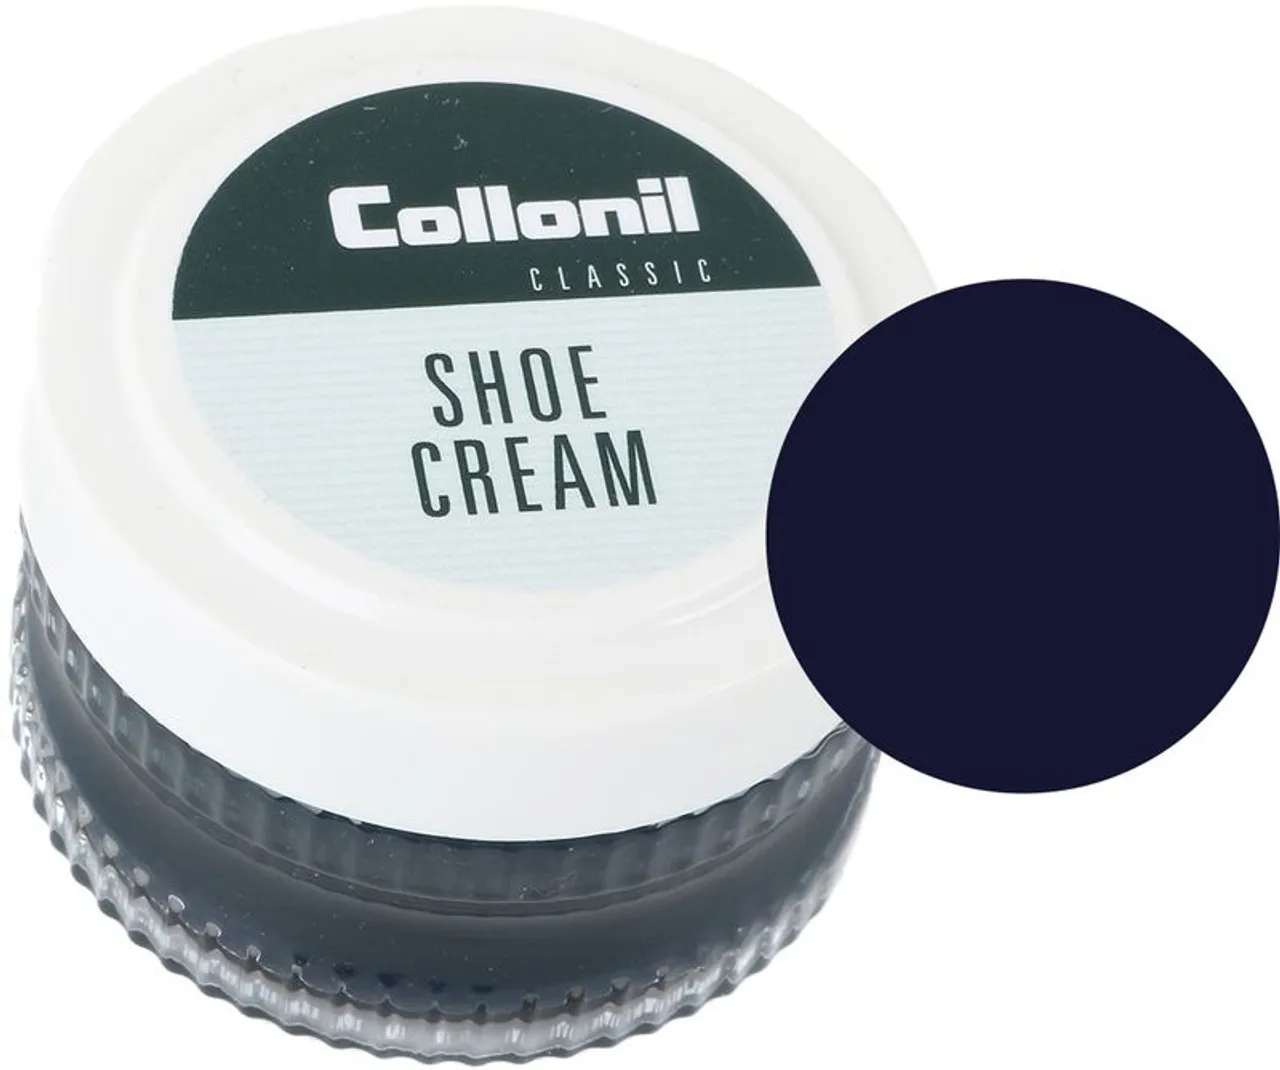 Collonil Shoe Cream Donkerblauw 519